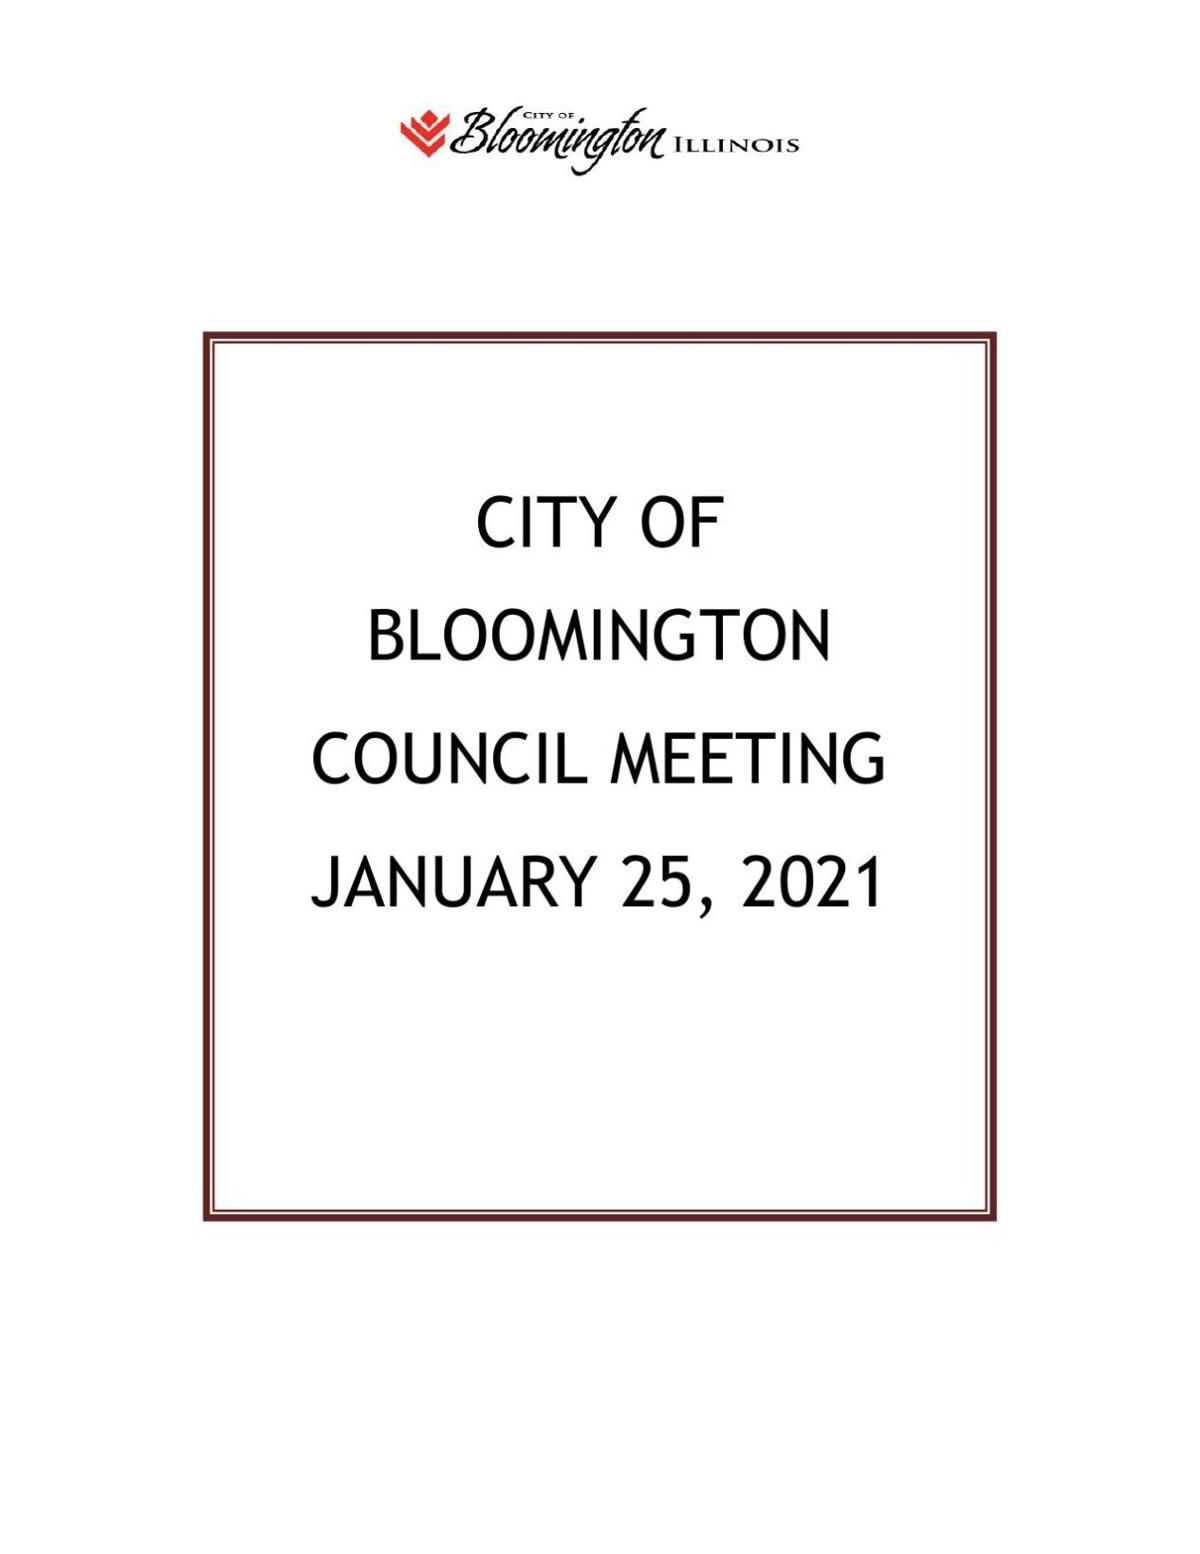 Bloomington City Council 1/25/21 agenda